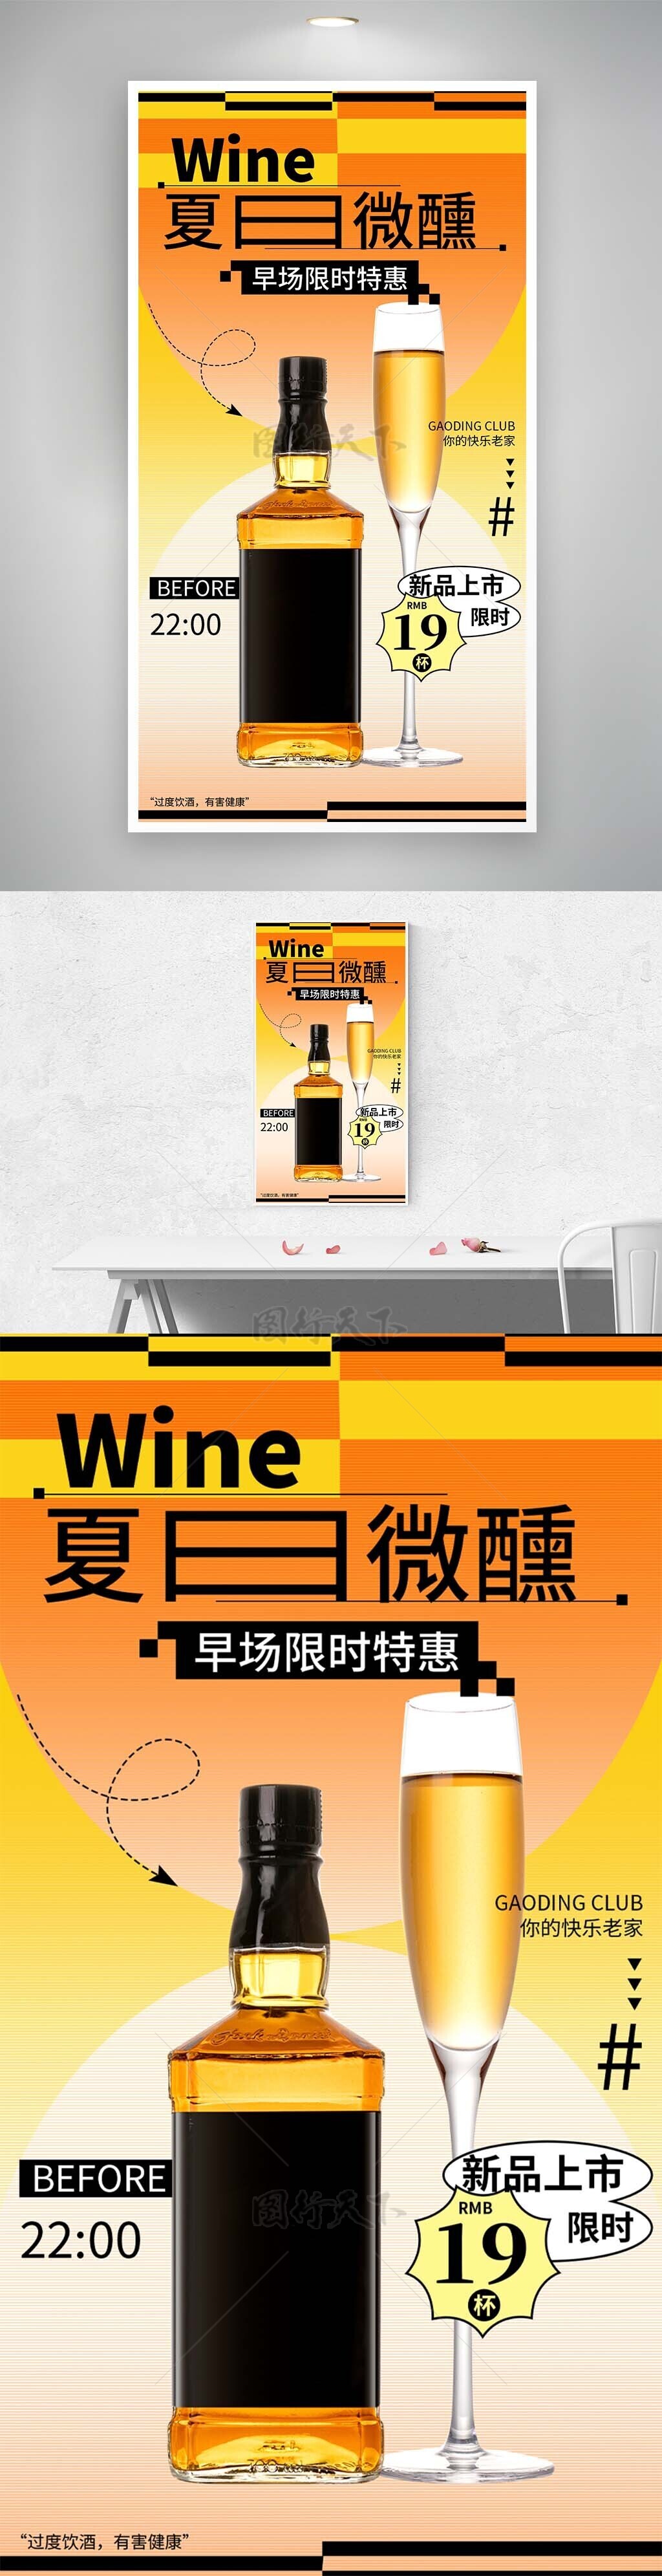 夏日微醺早场特惠酒品特惠主题海报